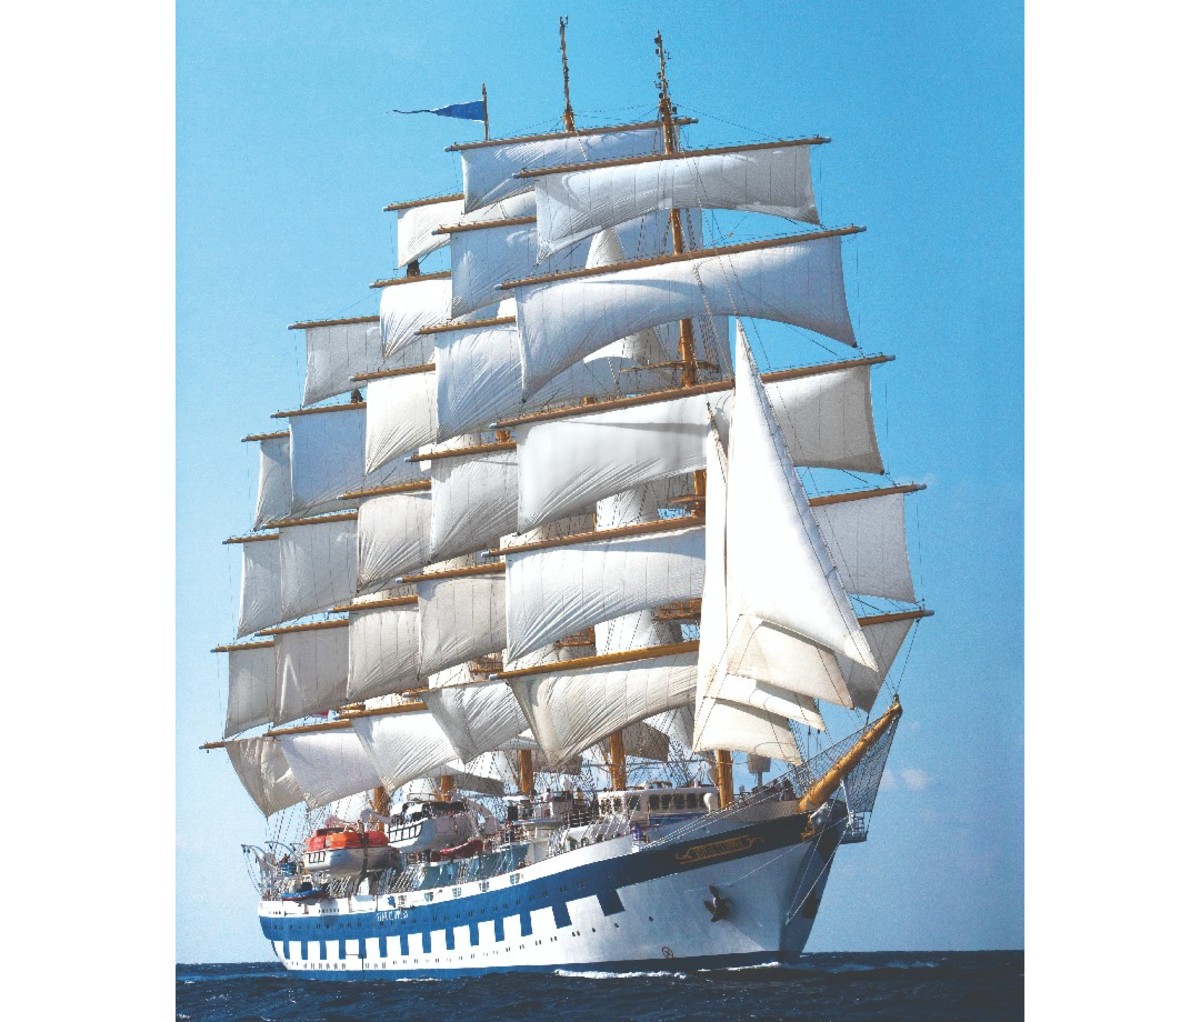 Full-rigged sailing ship